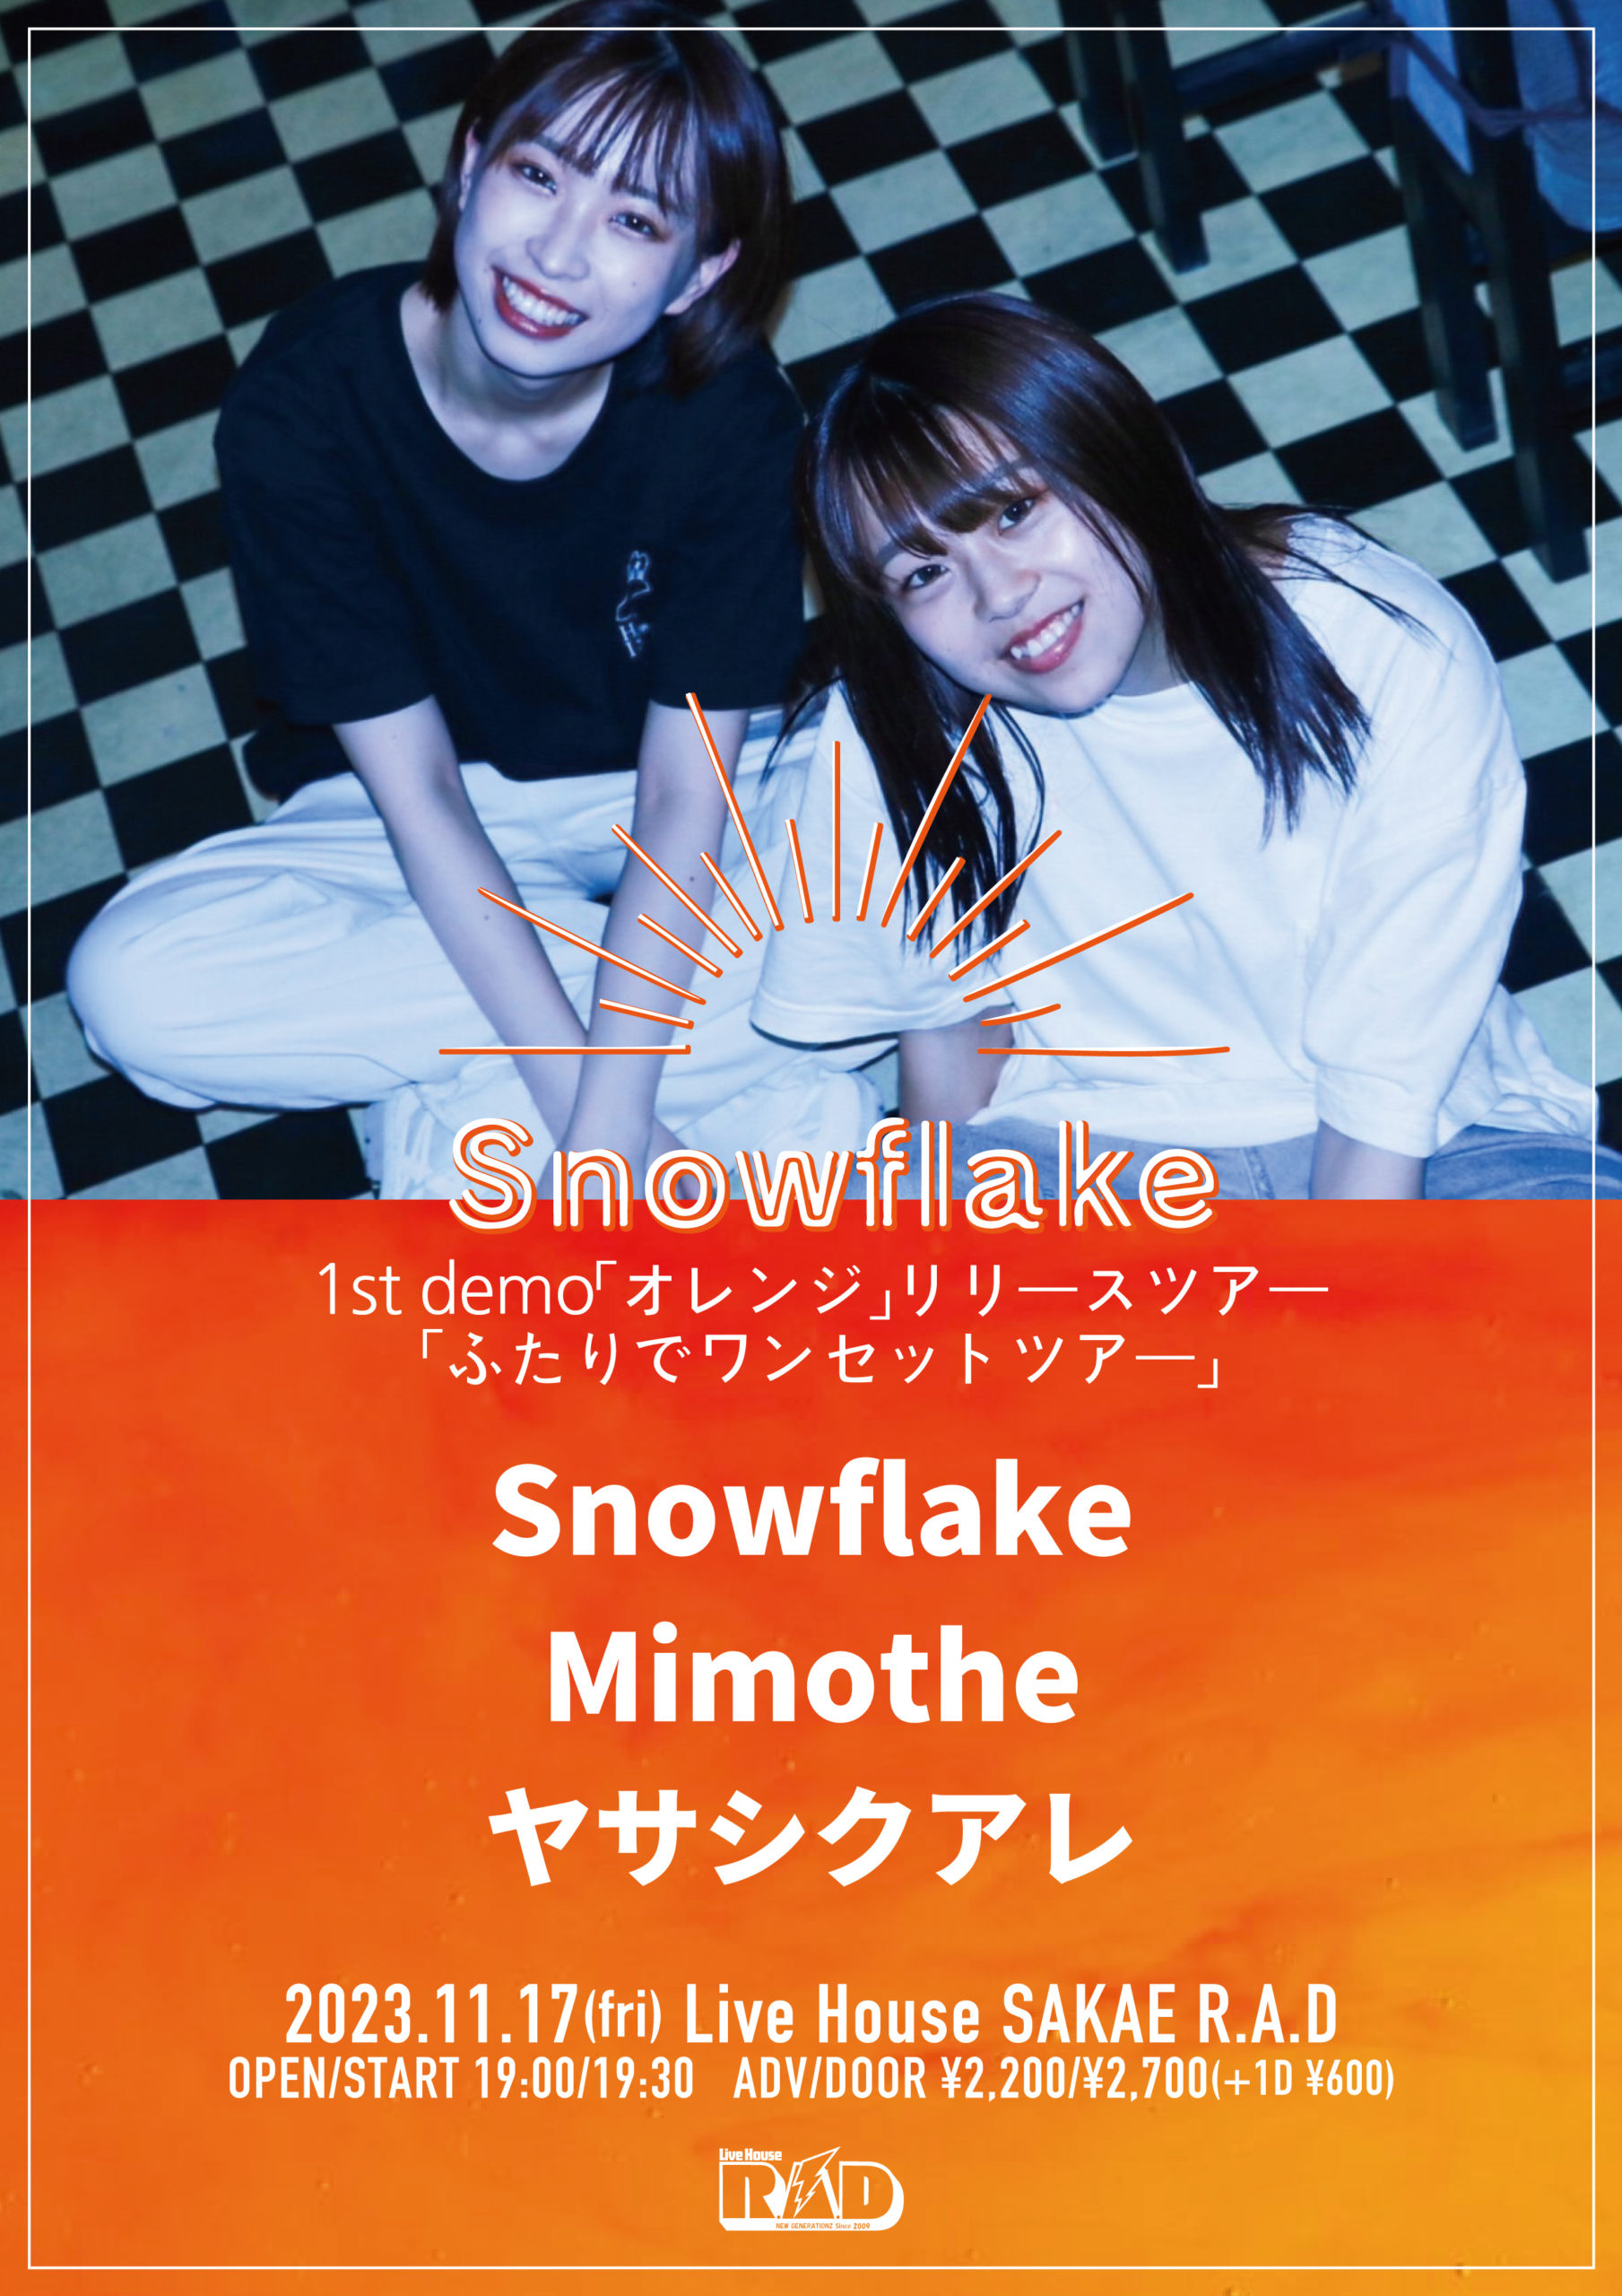 Snowflake 1st demo「オレンジ」リリースツアー 「ふたりでワンセットツアー」